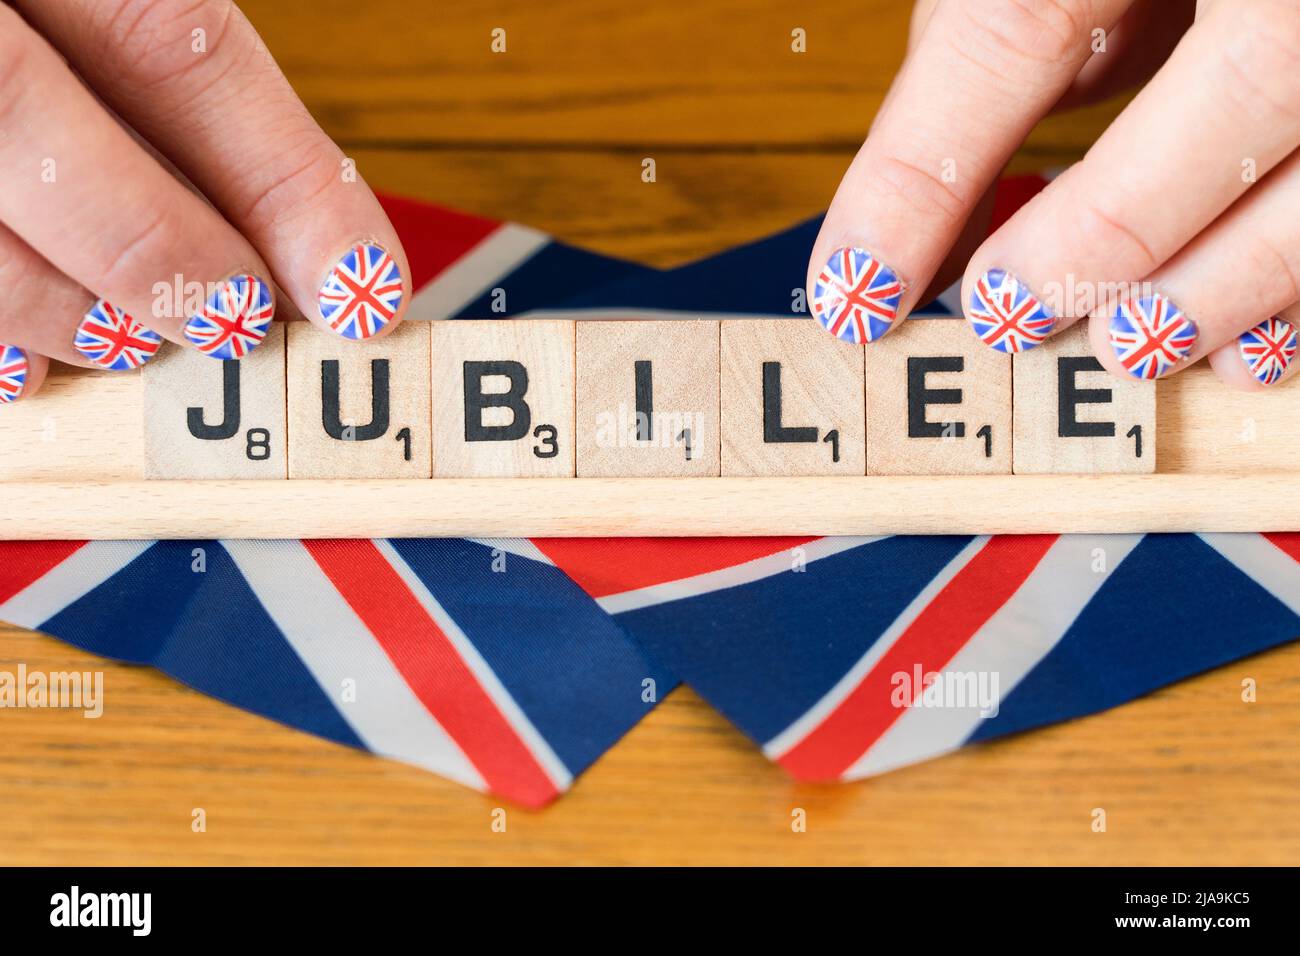 Die Finger der Frau mit den Fingernägeln sind mit der britischen Flagge bemalt, die die Buchstaben des Jubiläums - das Platin-Jubiläum der Königin im Juni 2022 festhält Stockfoto